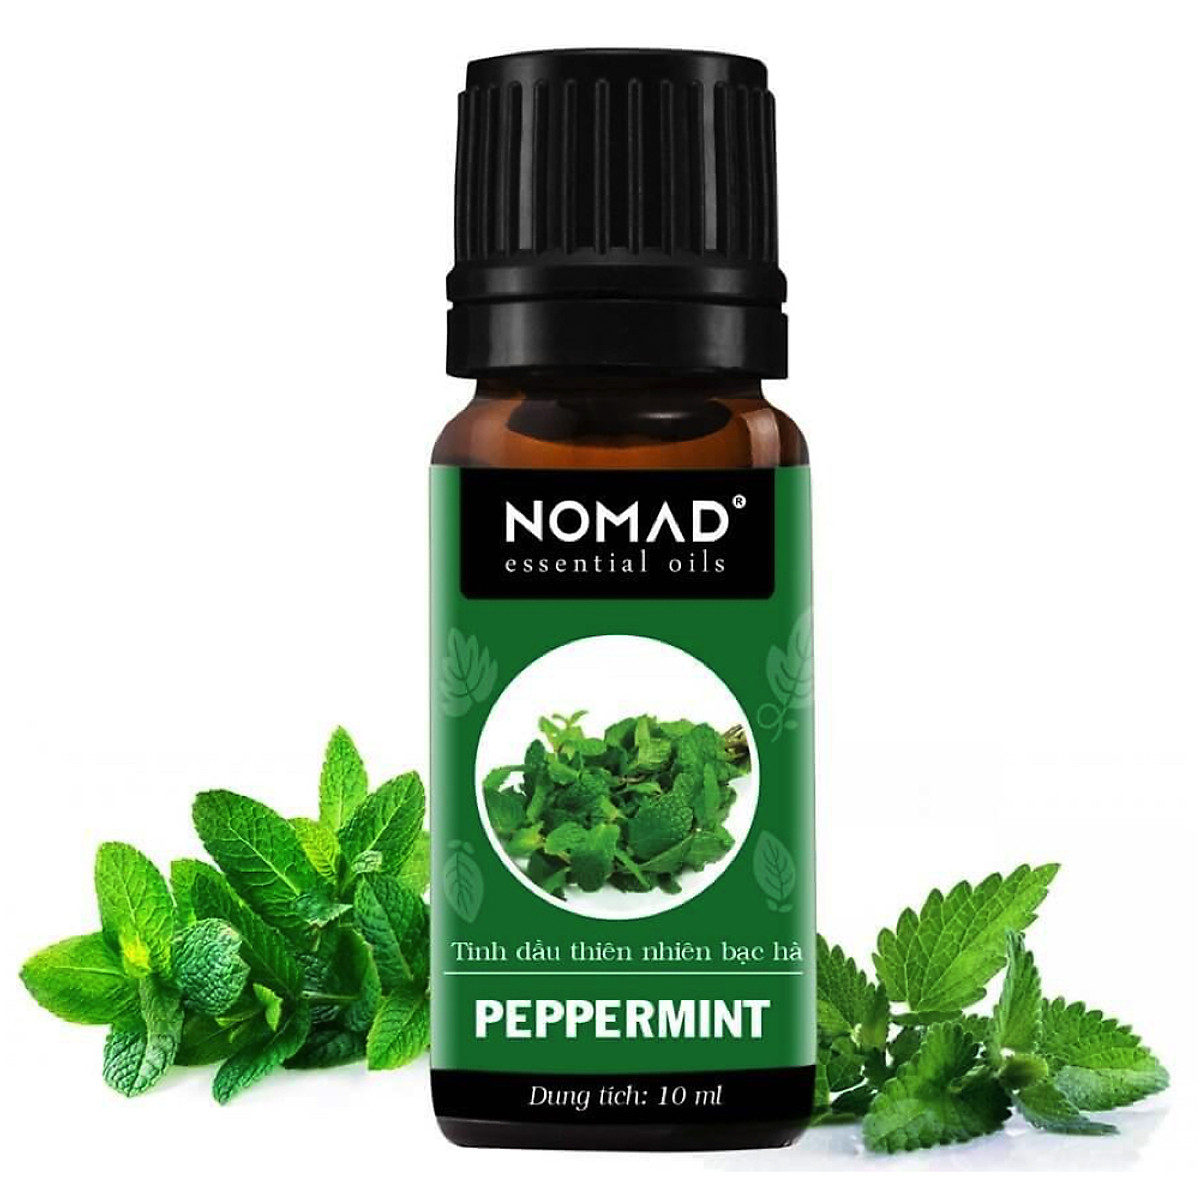 Tinh Dầu Thiên Nhiên Hương Bạc Hà Nomad Essential Oils Peppermint 10ml